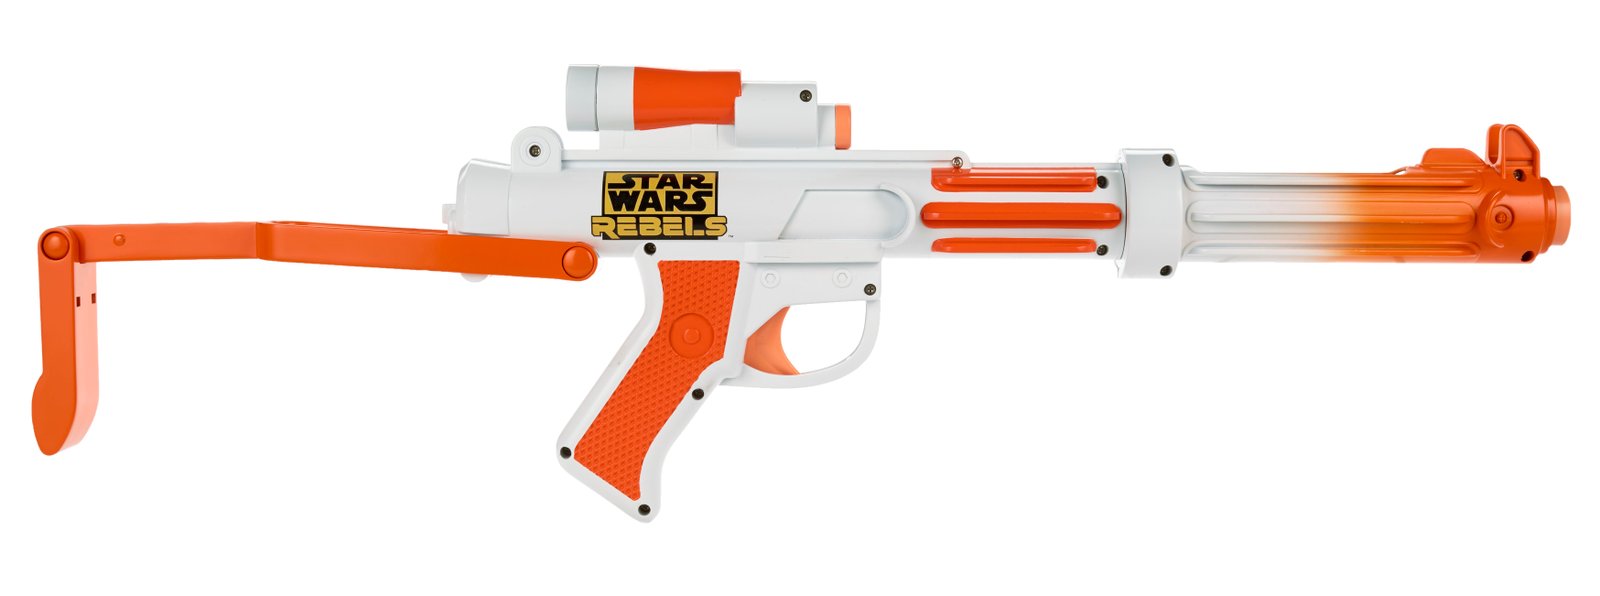 star-wars-rebels-weapon-stormtrooper-blaster.jpg